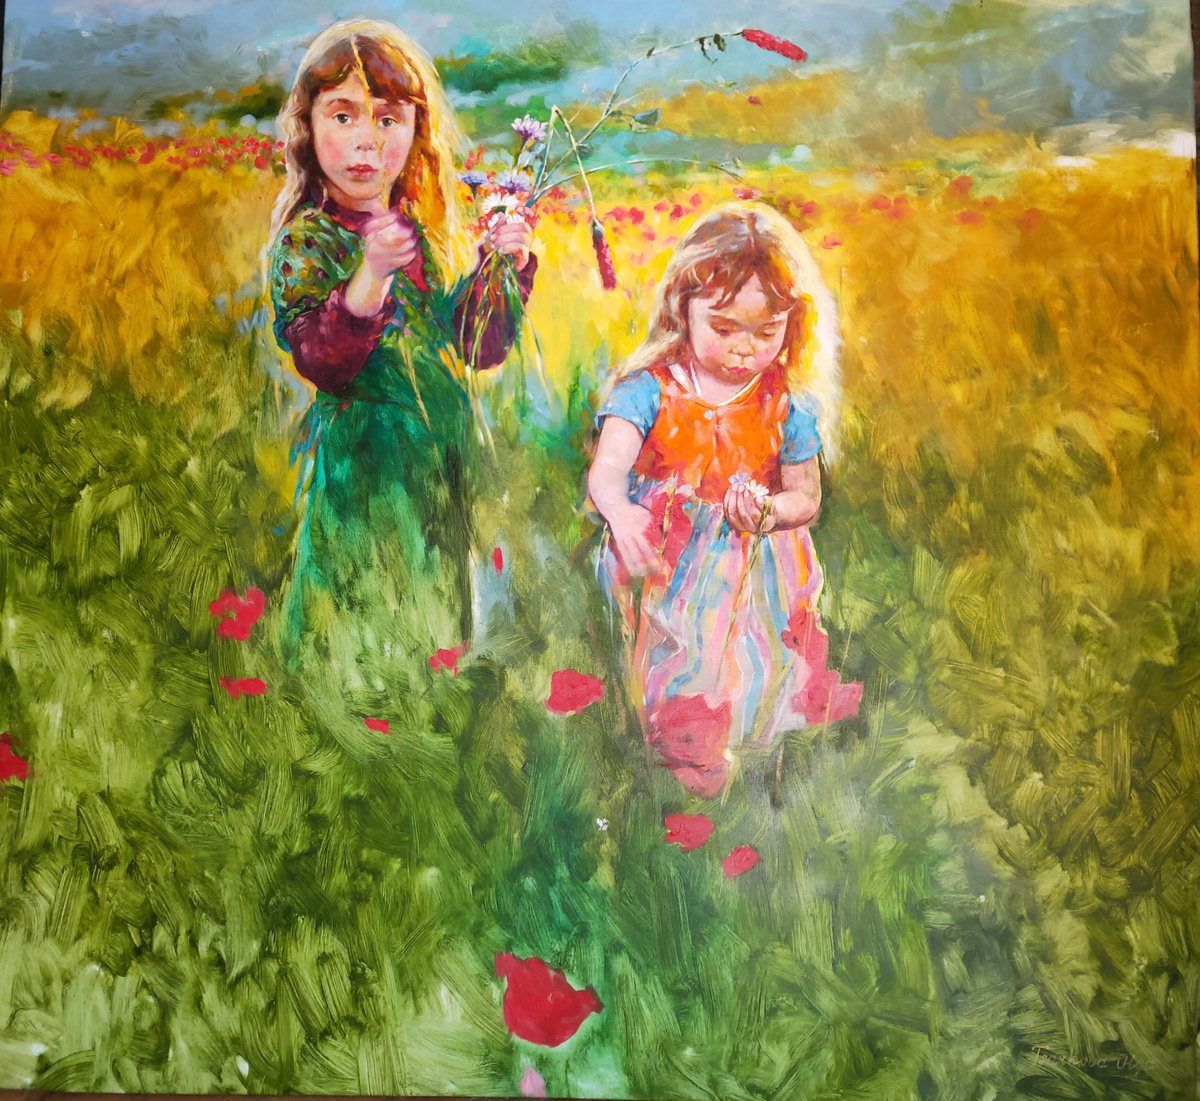 Two Sisters on the poppy field by Olga Tsarkova by Olga Tsarkova